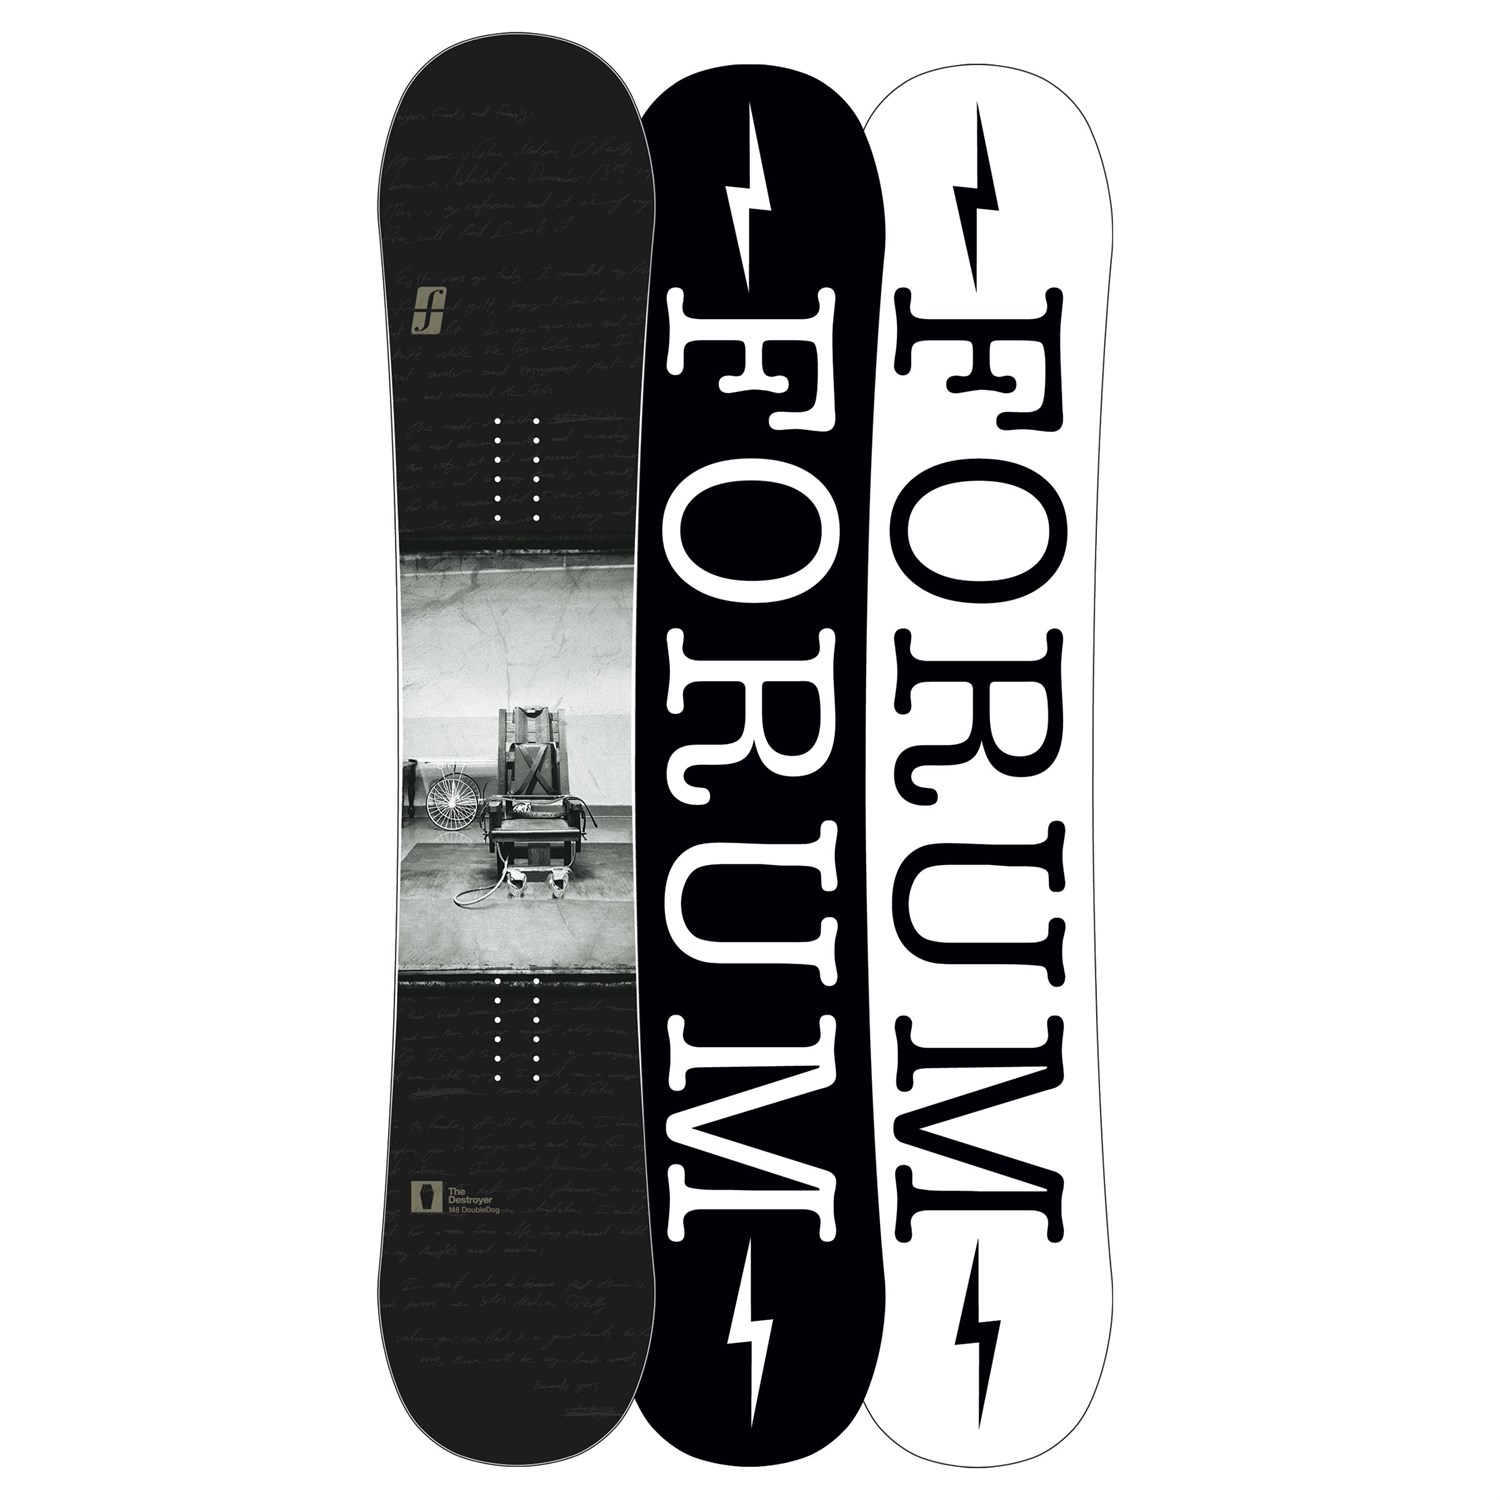 Forum Destroyer Snowboard